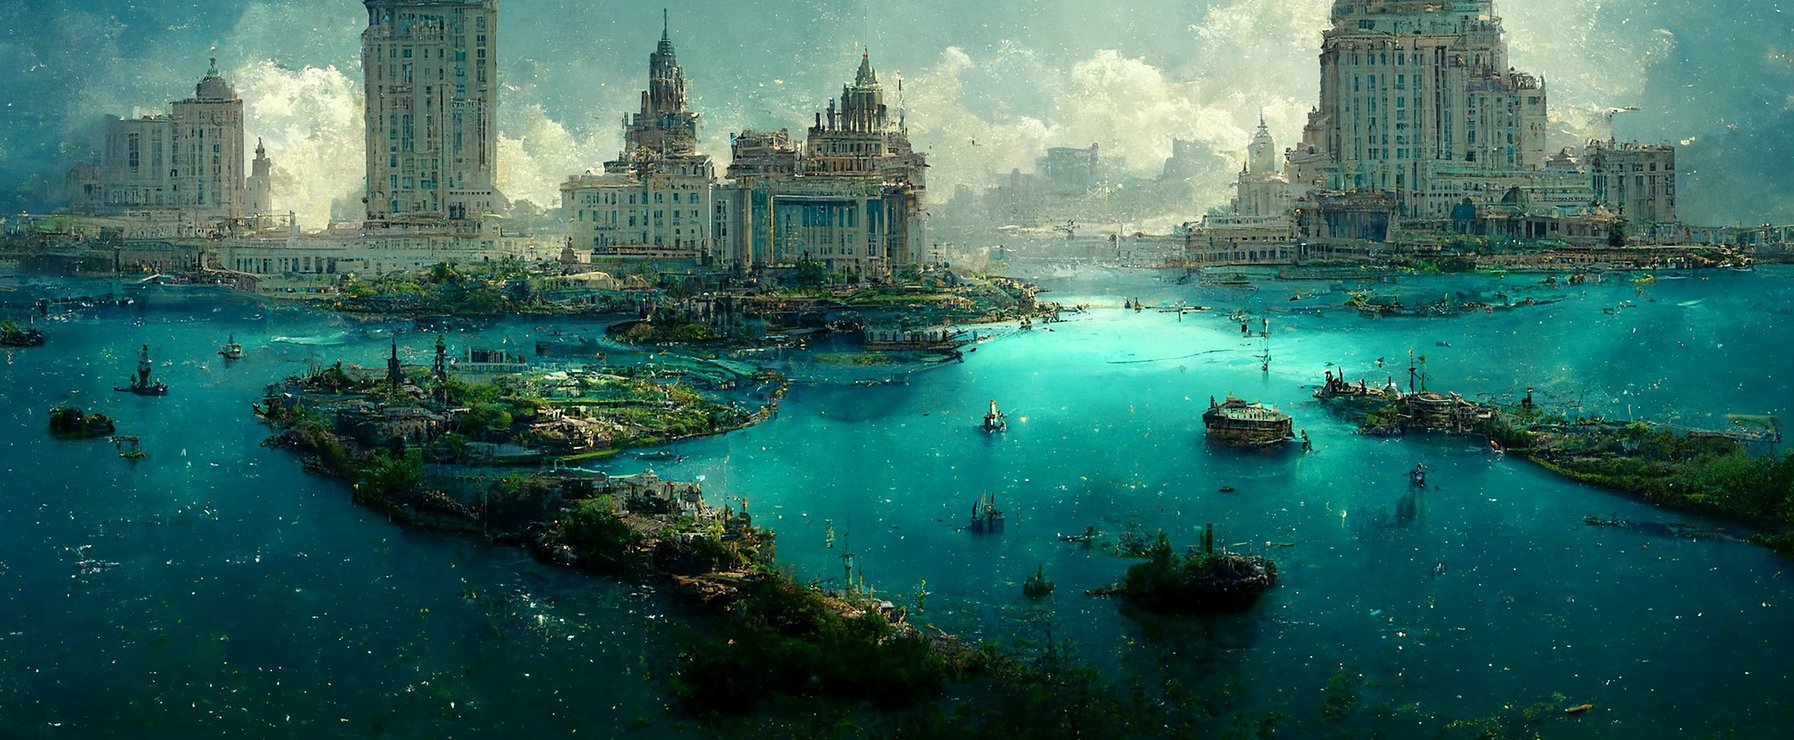 Atlantisz mégsem tűnt el, van egy elképesztő magyarázat az ősi civilizáció sorsára